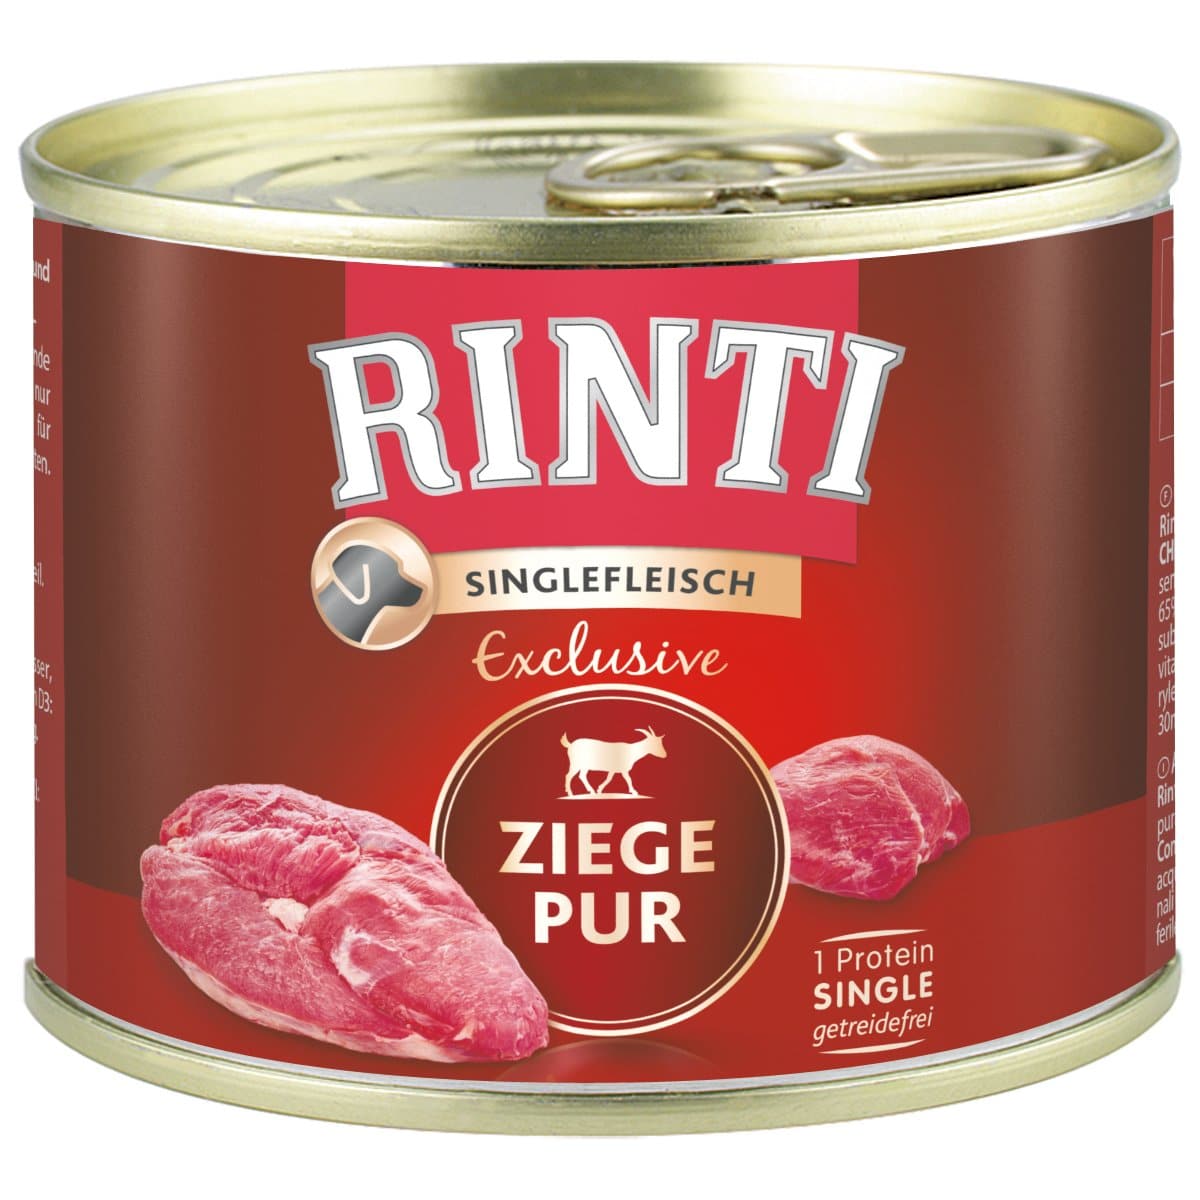 Rinti Singlefleisch Exclusive Ziege pur 12x185g